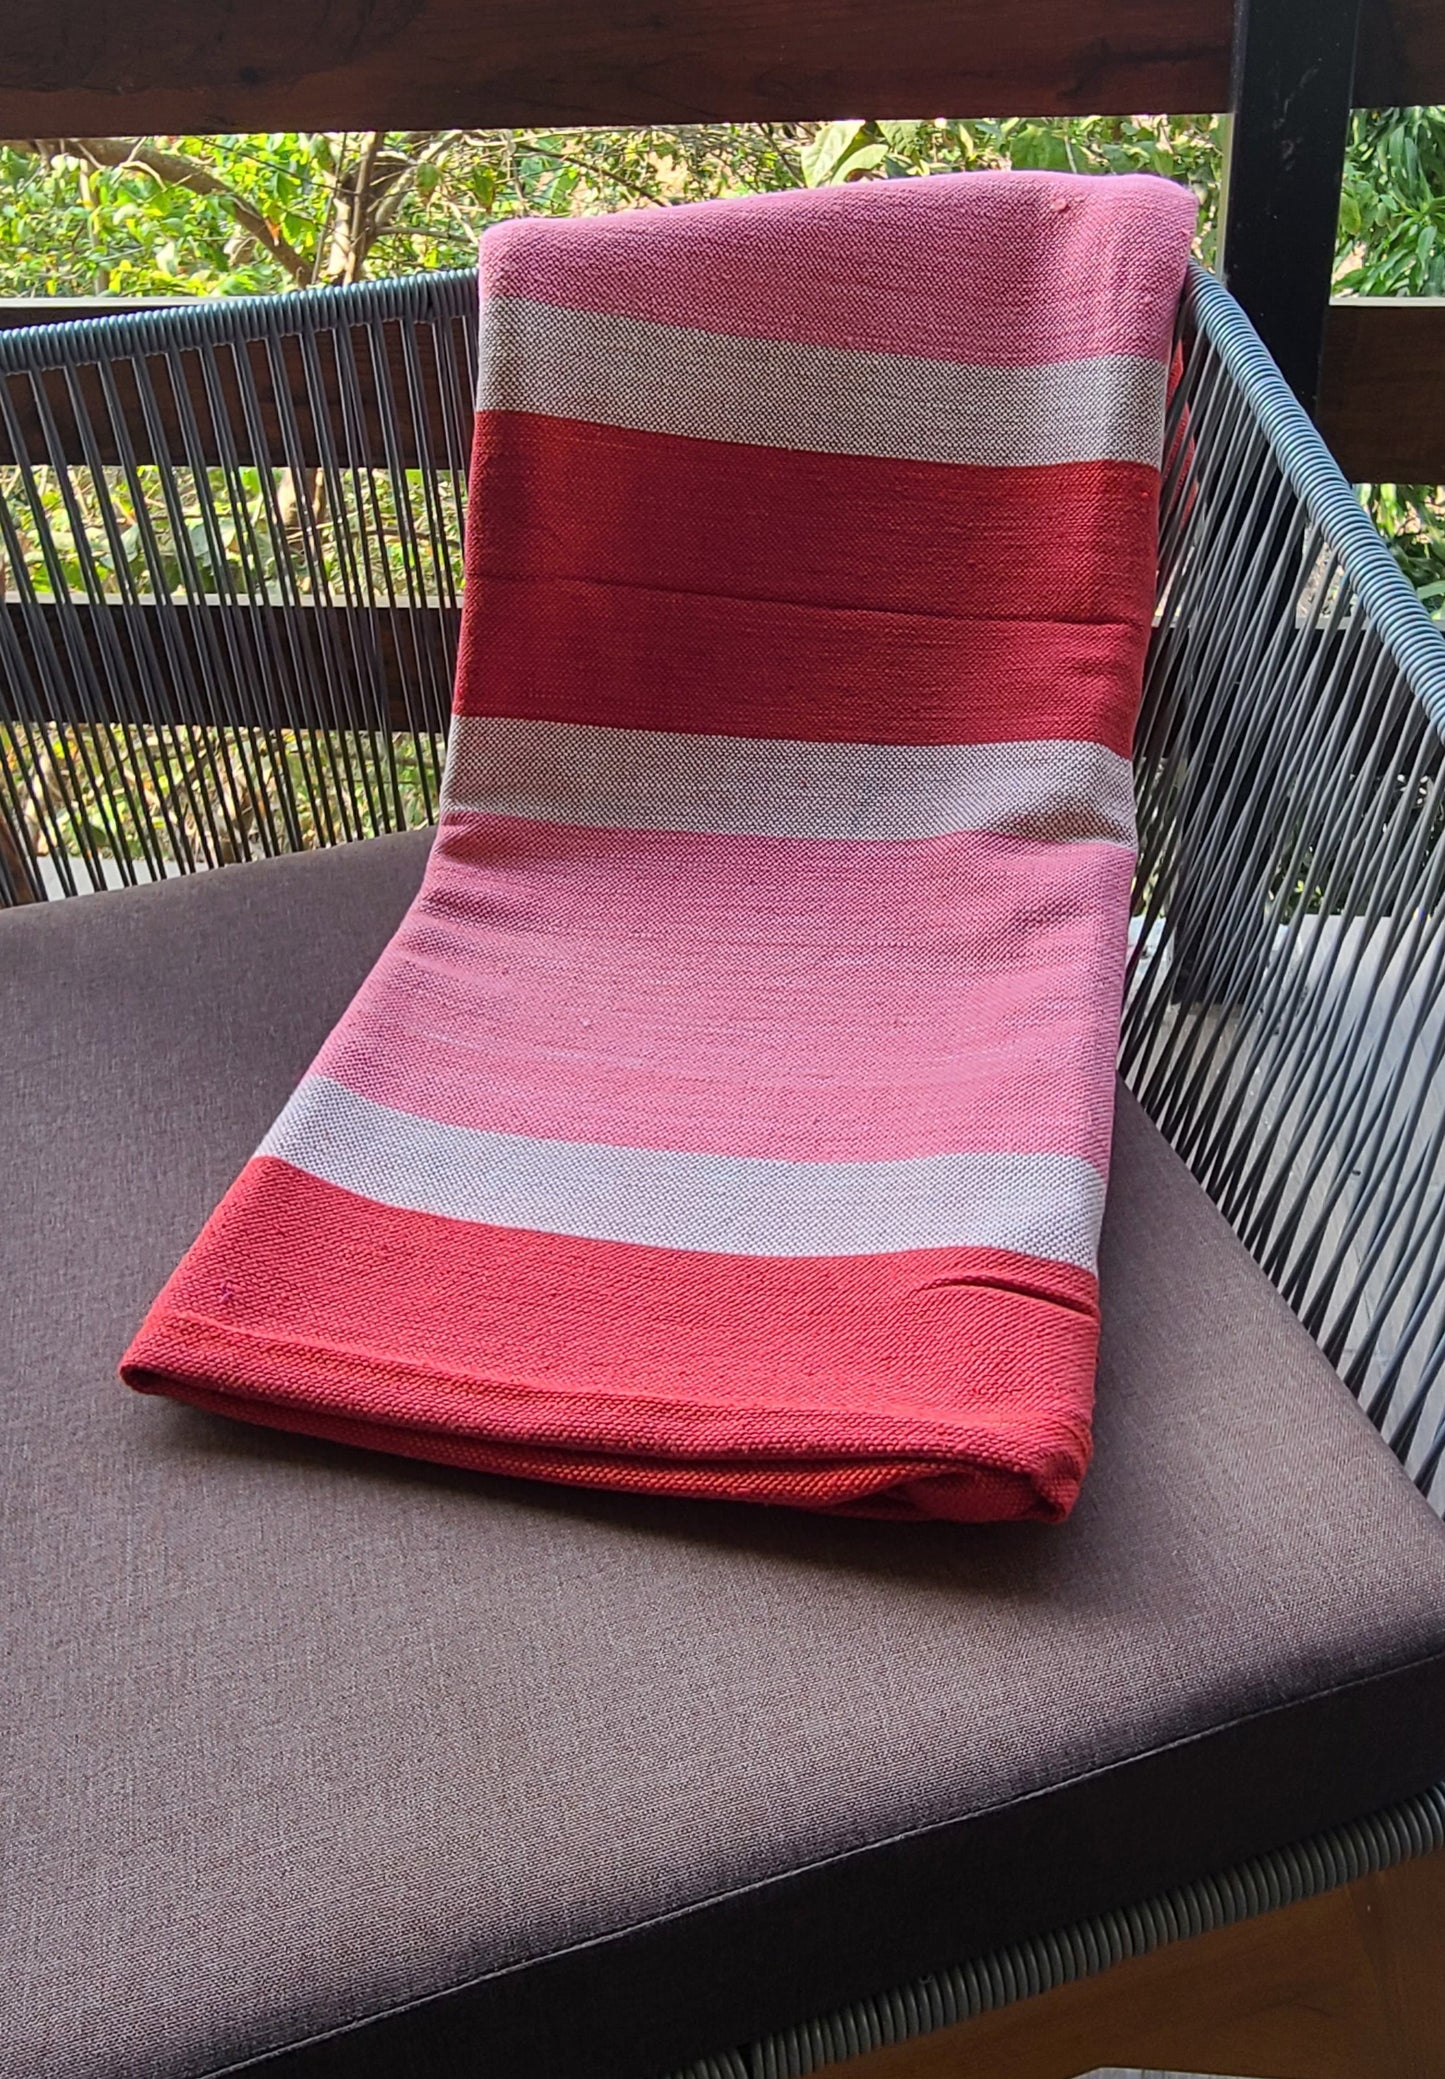 La Carissima Blanket